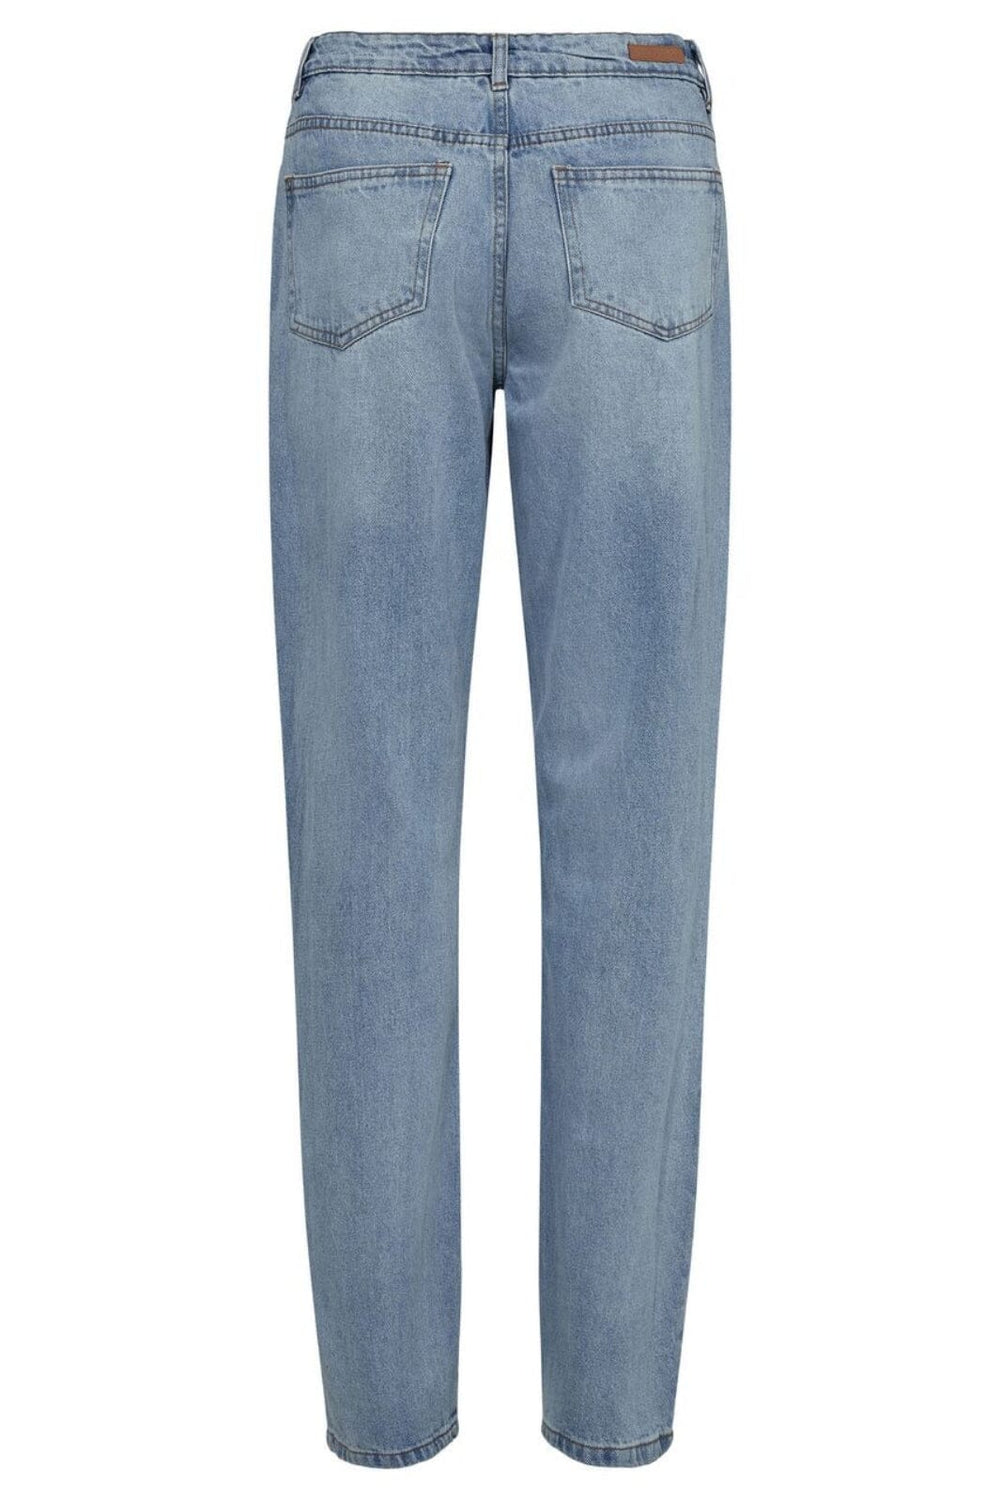 Sofie Schnoor - Snos427 Jeans - Denim Blue Jeans 